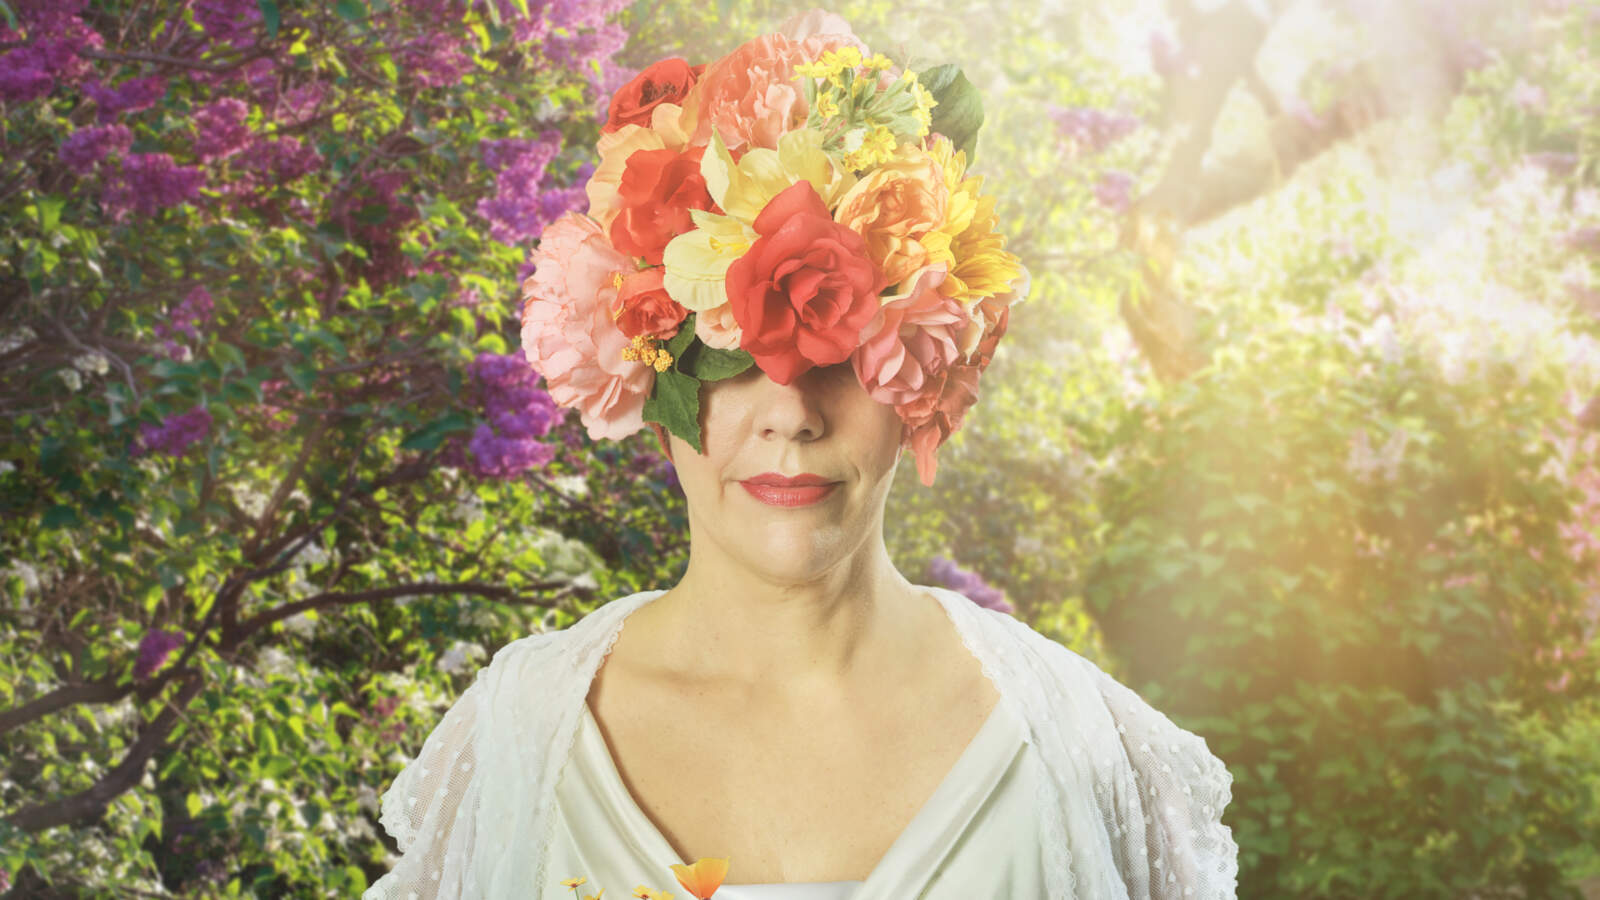 En person som bär en huvudbonad täckt av färgglada blommor står bland blommor i en solig, frodig trädgård.